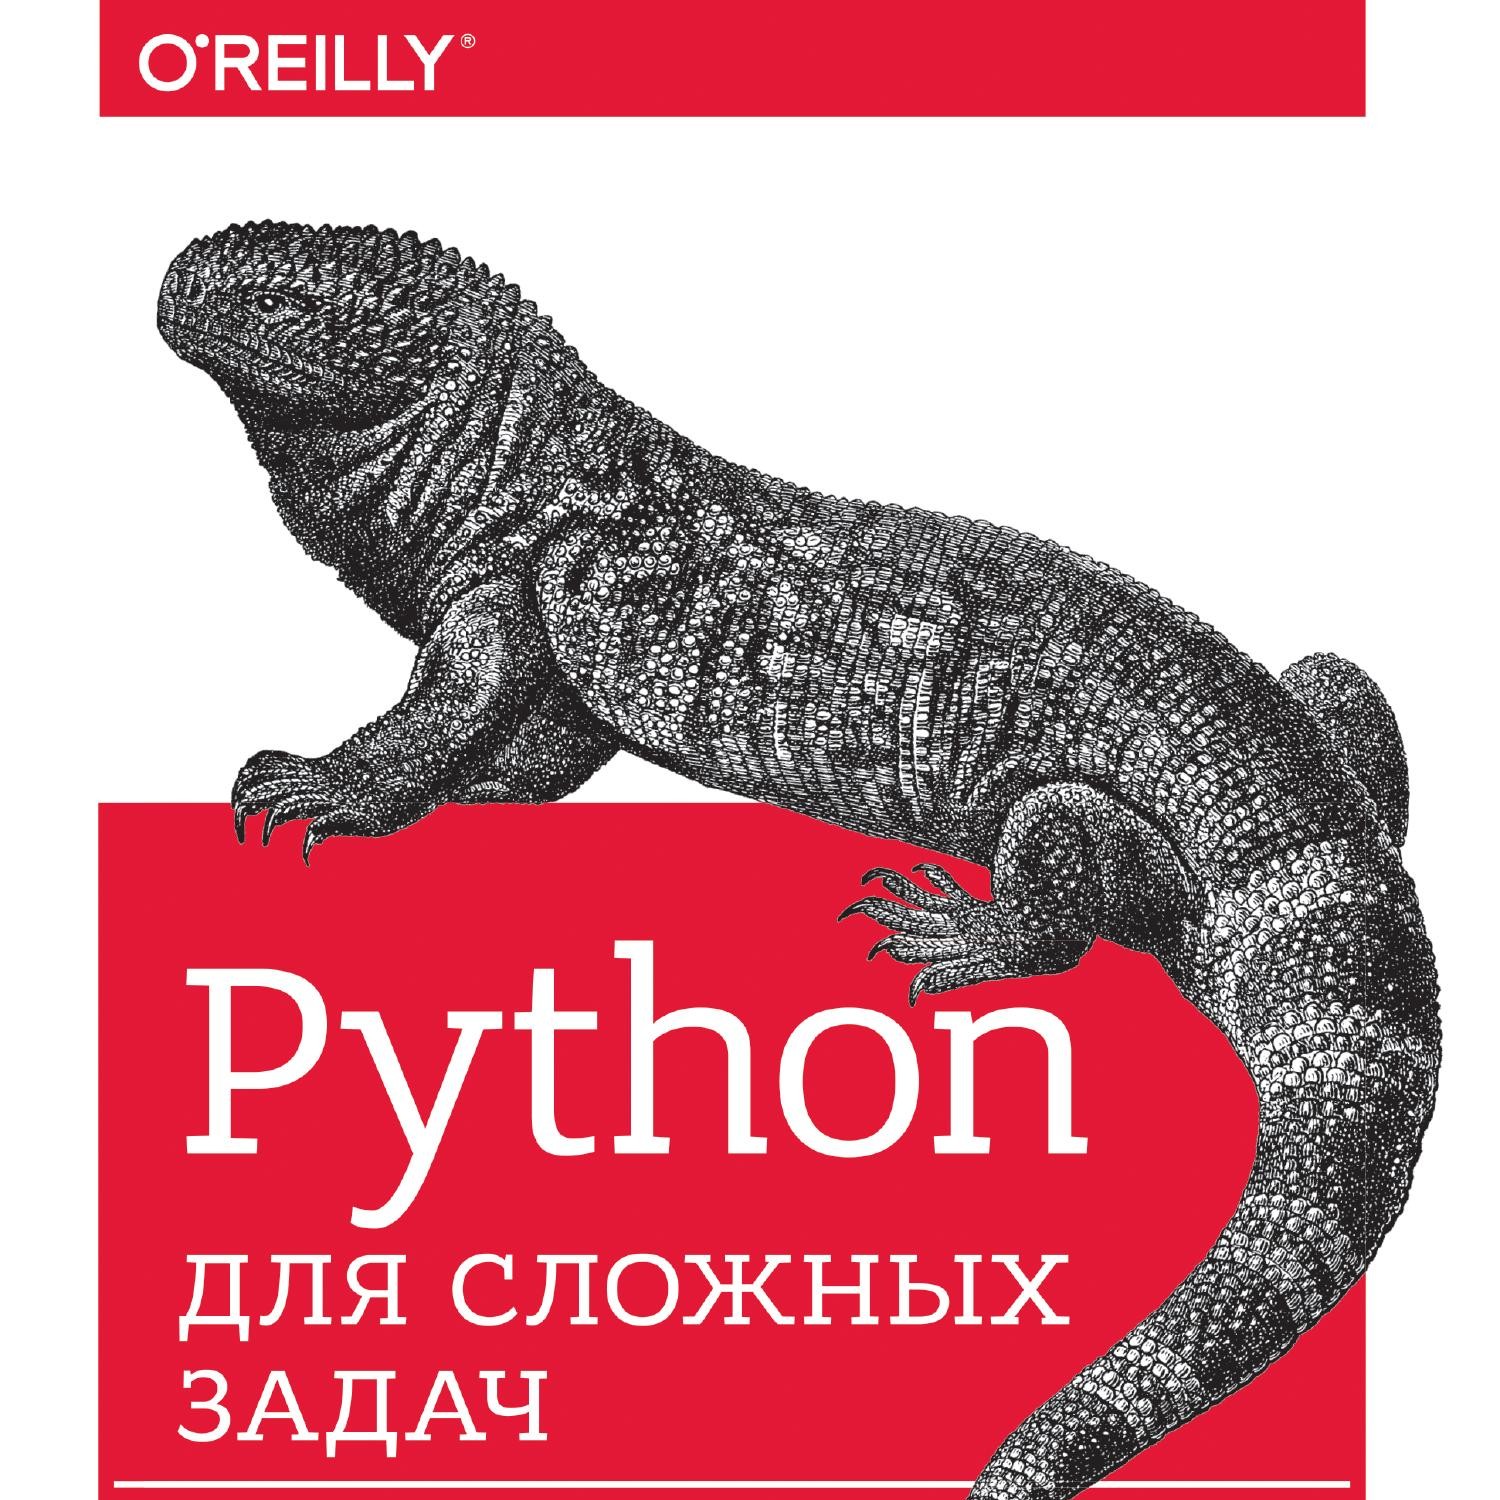 Задачи python книга. Python для детей. Машинное обучение на Python книга. Дж. Вандер плас — Python для сложных задач. O Reilly Python.